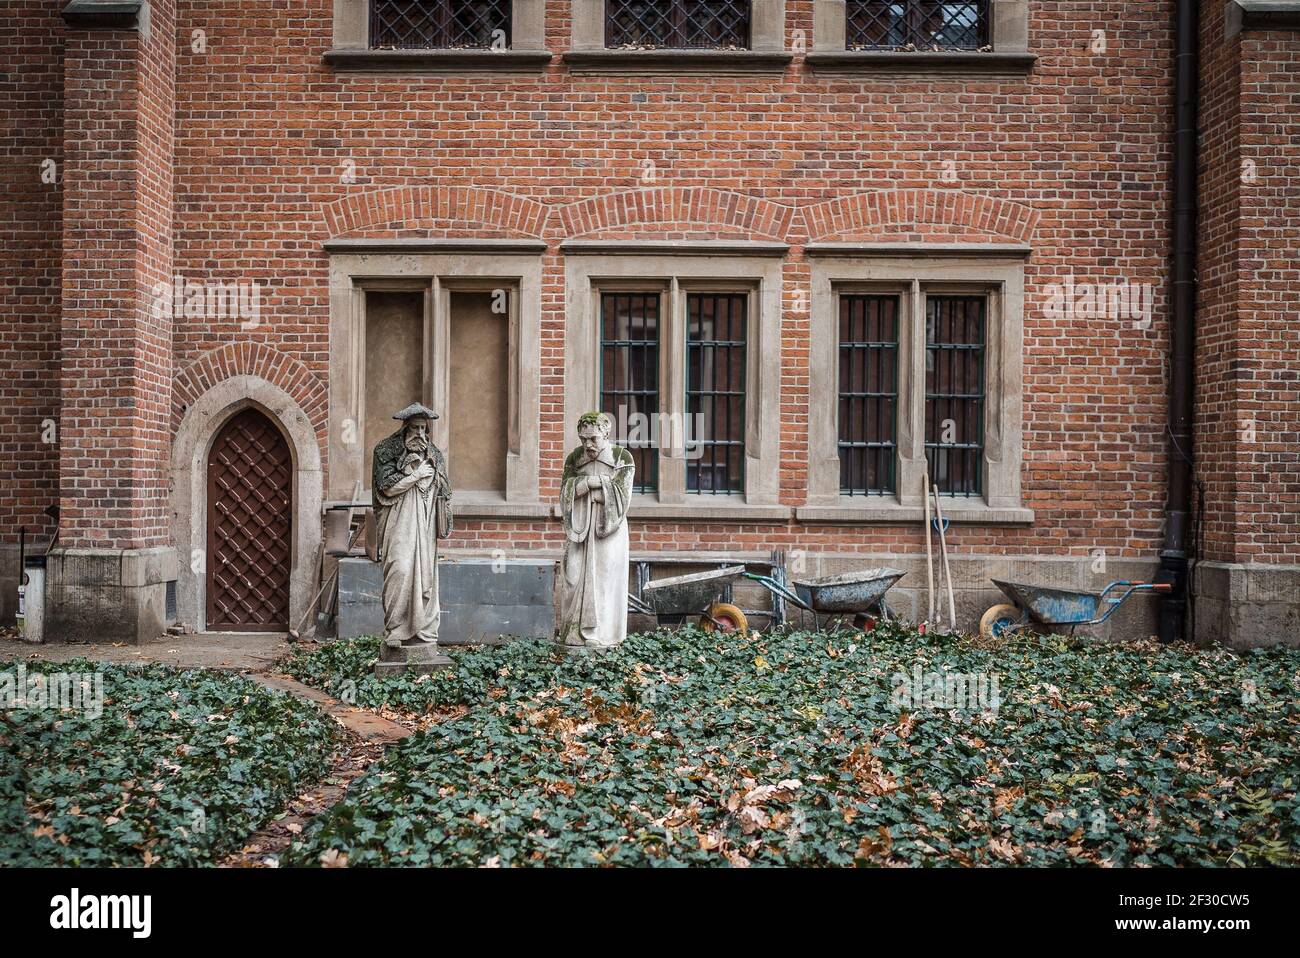 Vieilles statues religieuses en pierre abandonnées à l'extérieur du bâtiment vide en cours de rénovation les rows de roue et le jardin trop grand ayant l'air triste perdu à l'extérieur laissé derrière Banque D'Images